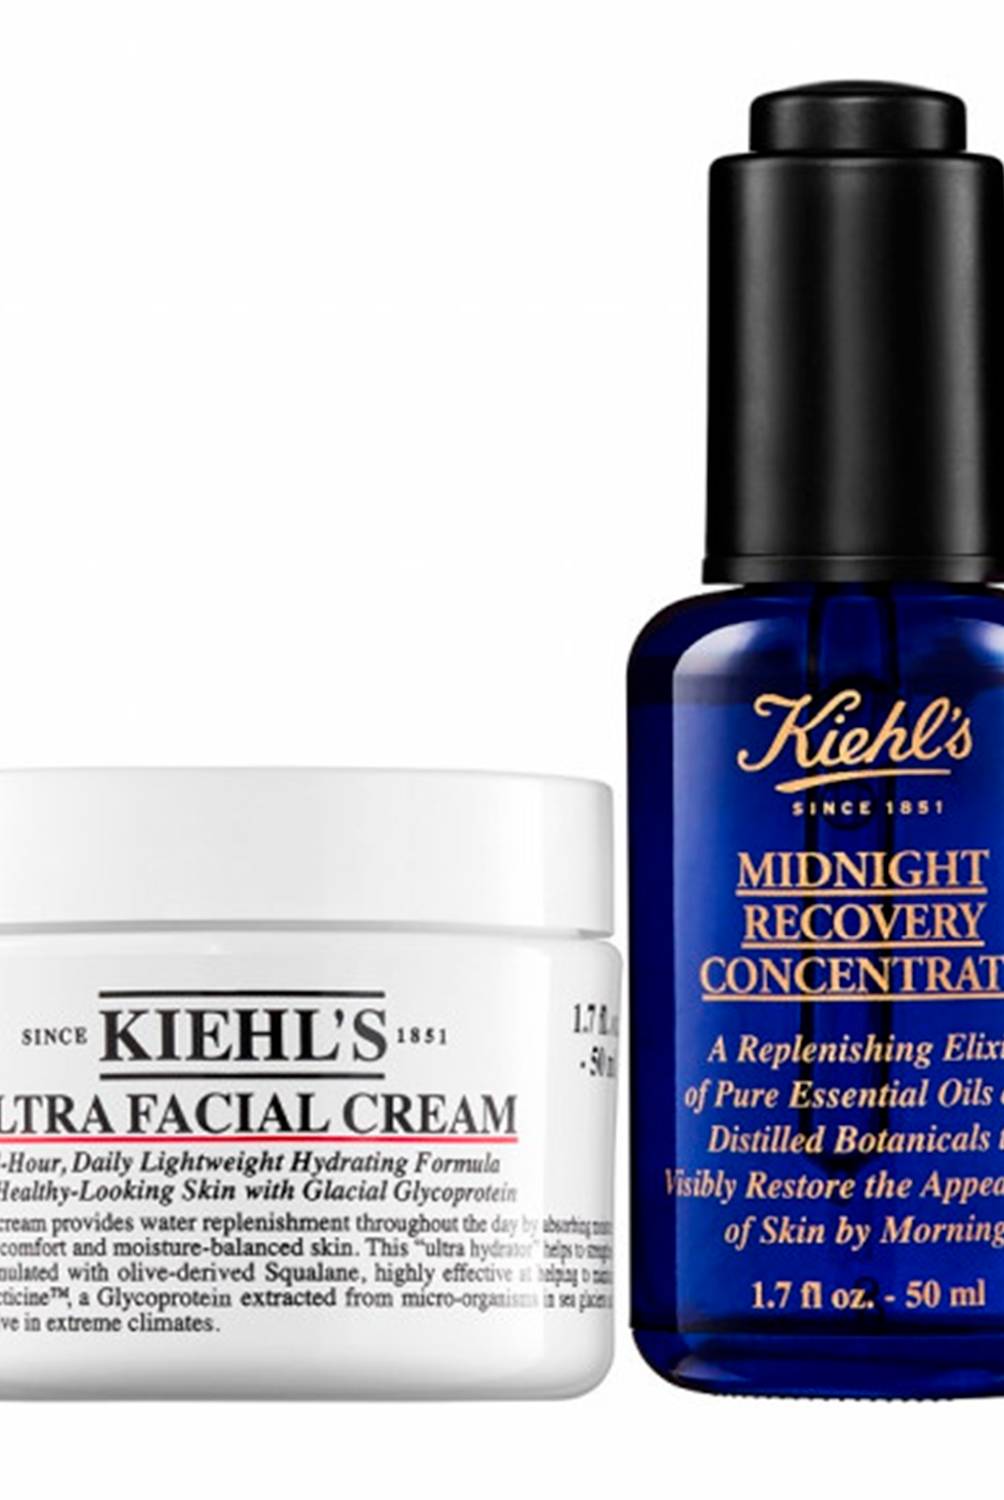 Kiehls - Set de Tratamiento Hidratación Facial Essentials Kiehls